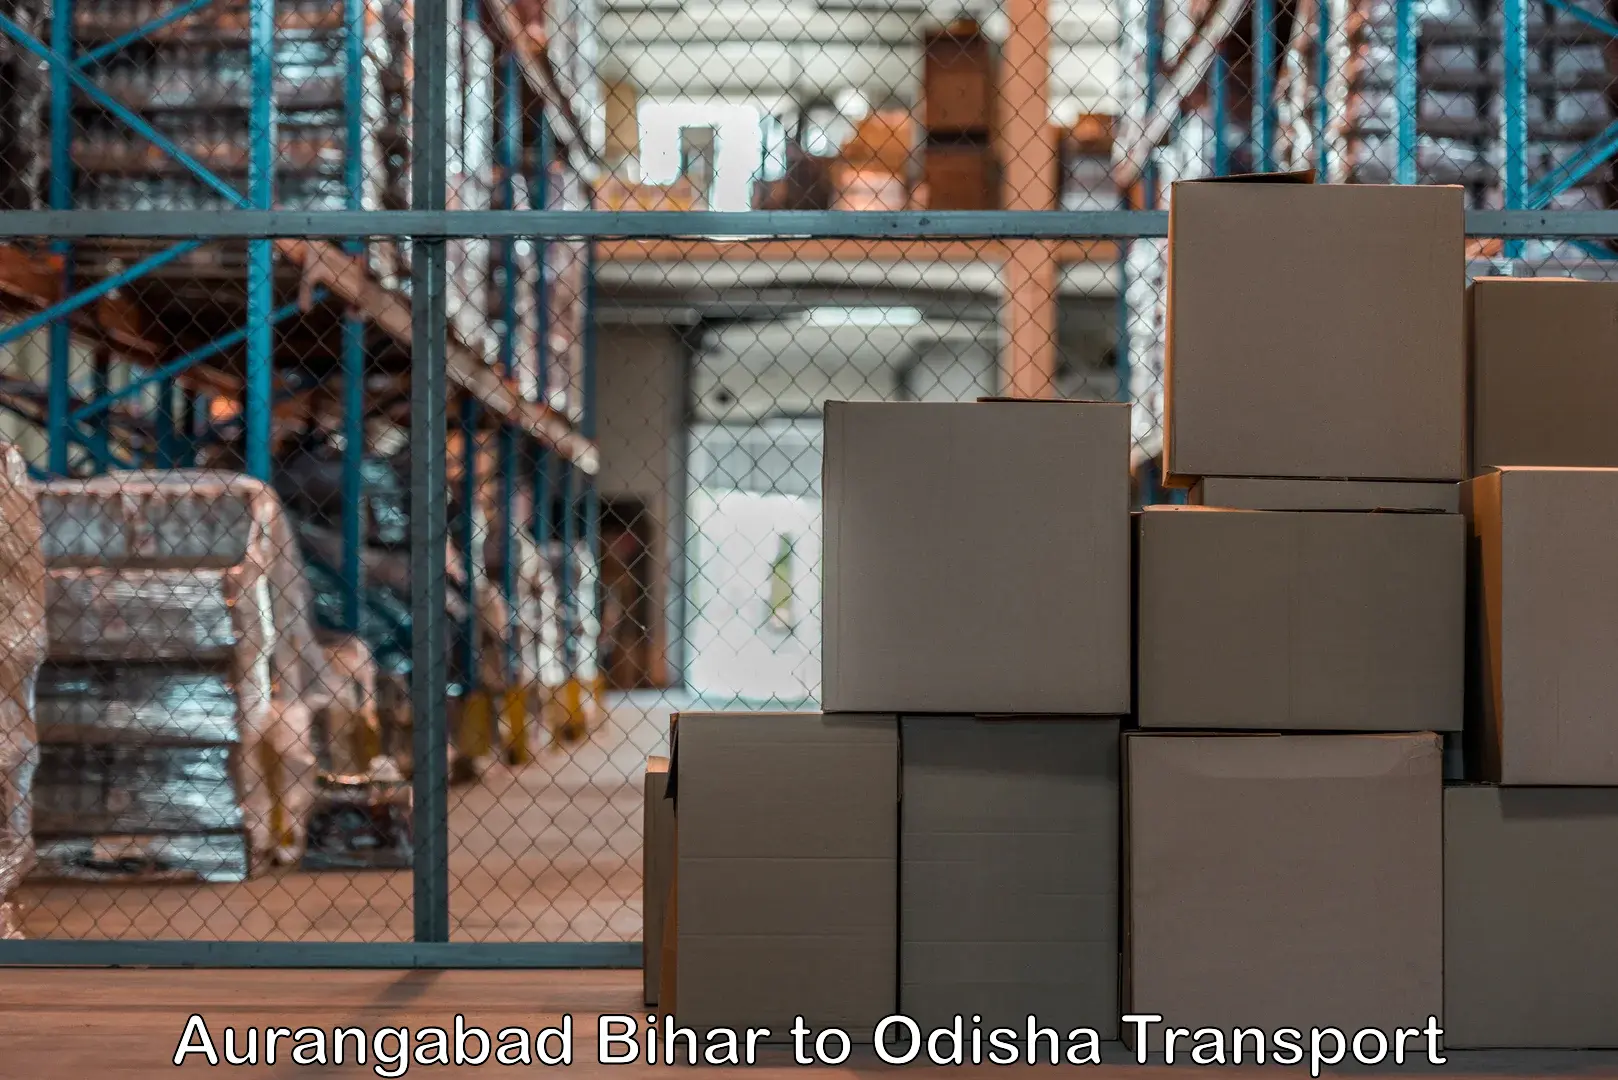 Cargo transport services Aurangabad Bihar to Cuttack